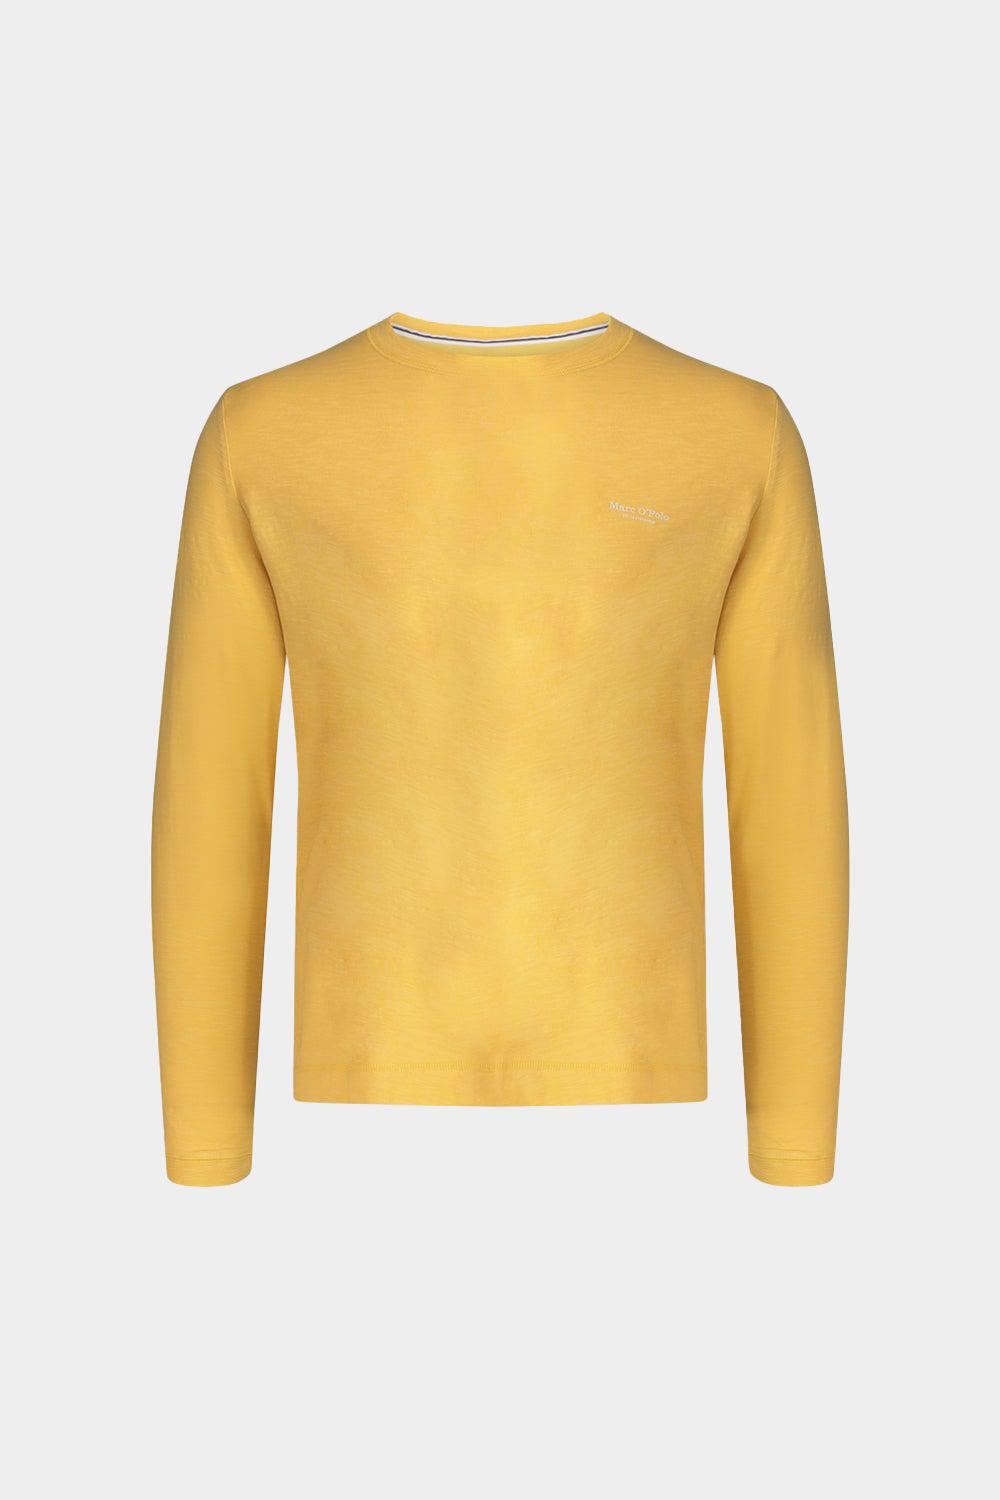 חולצת טי שירט שרוול ארוך לגברים לוגו MARC O'POLO Vendome online | ונדום .